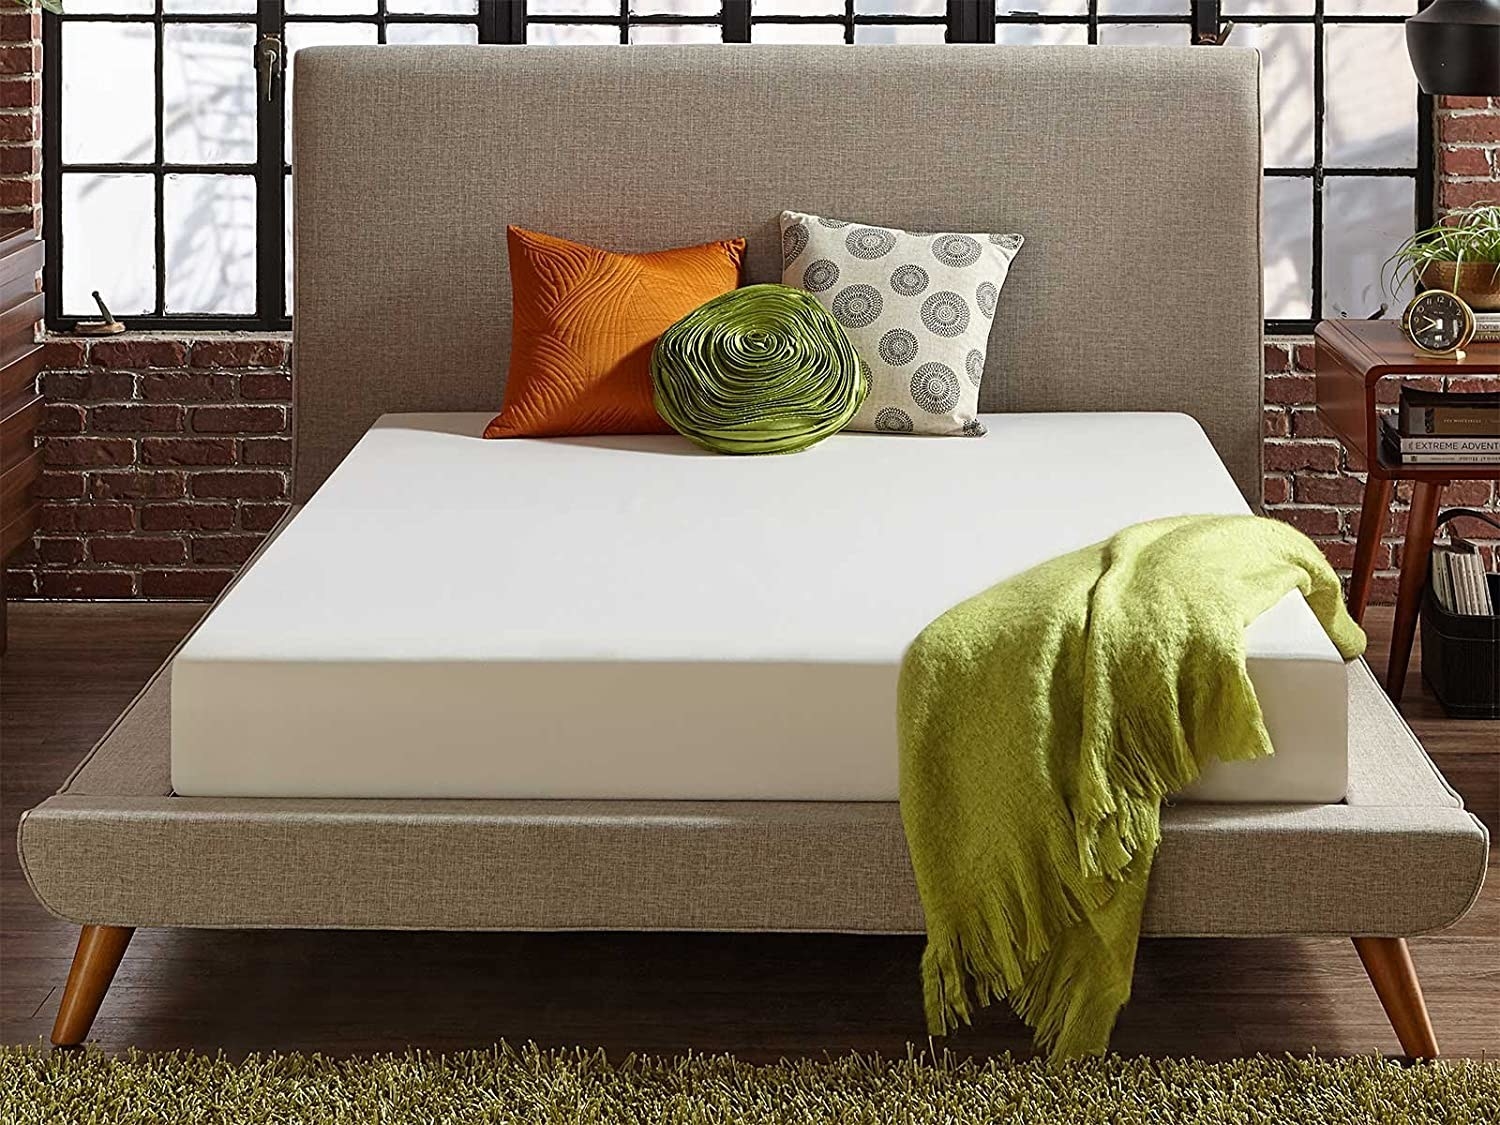 mattress on a bed